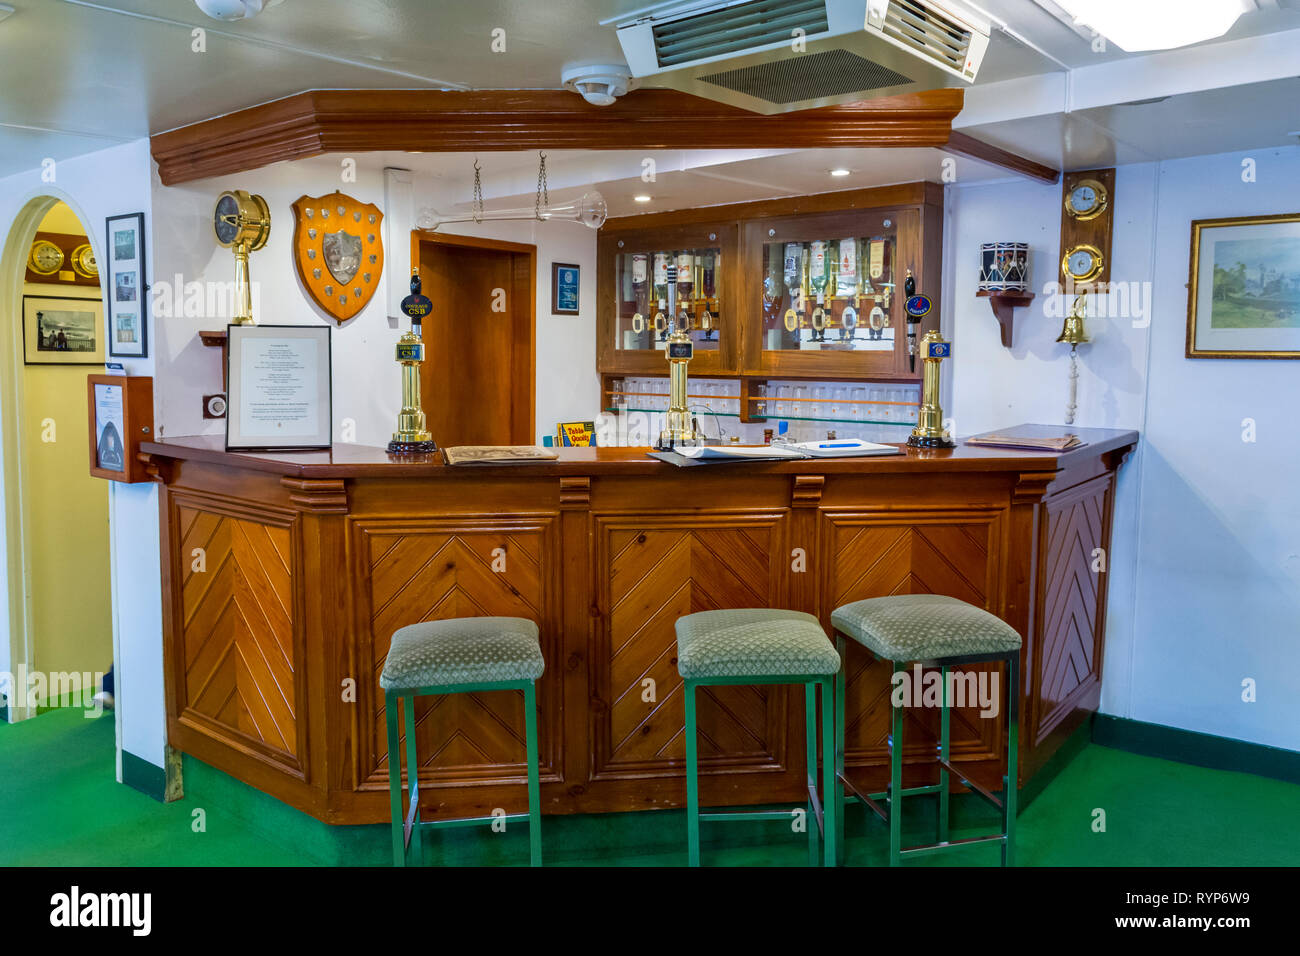 Die Unteroffiziere' und Chief Petty Officers' Mess, Royal Yacht Britannia, Hafen von Leith, Edinburgh, Schottland, Großbritannien Stockfoto